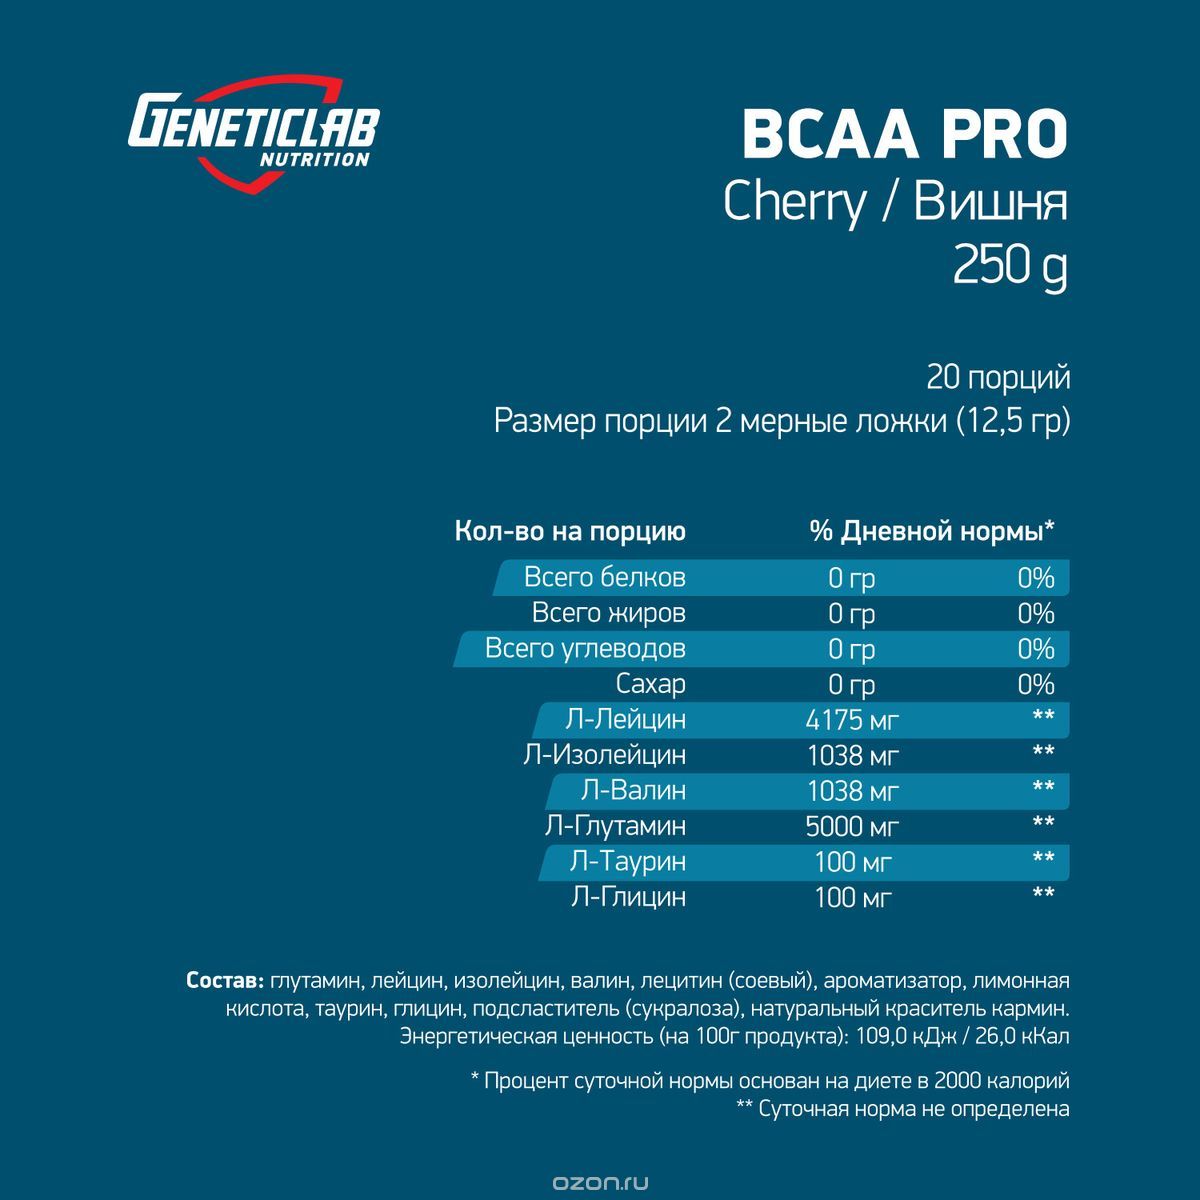  BCAA Geneticlab BCAA Pro, , 250 